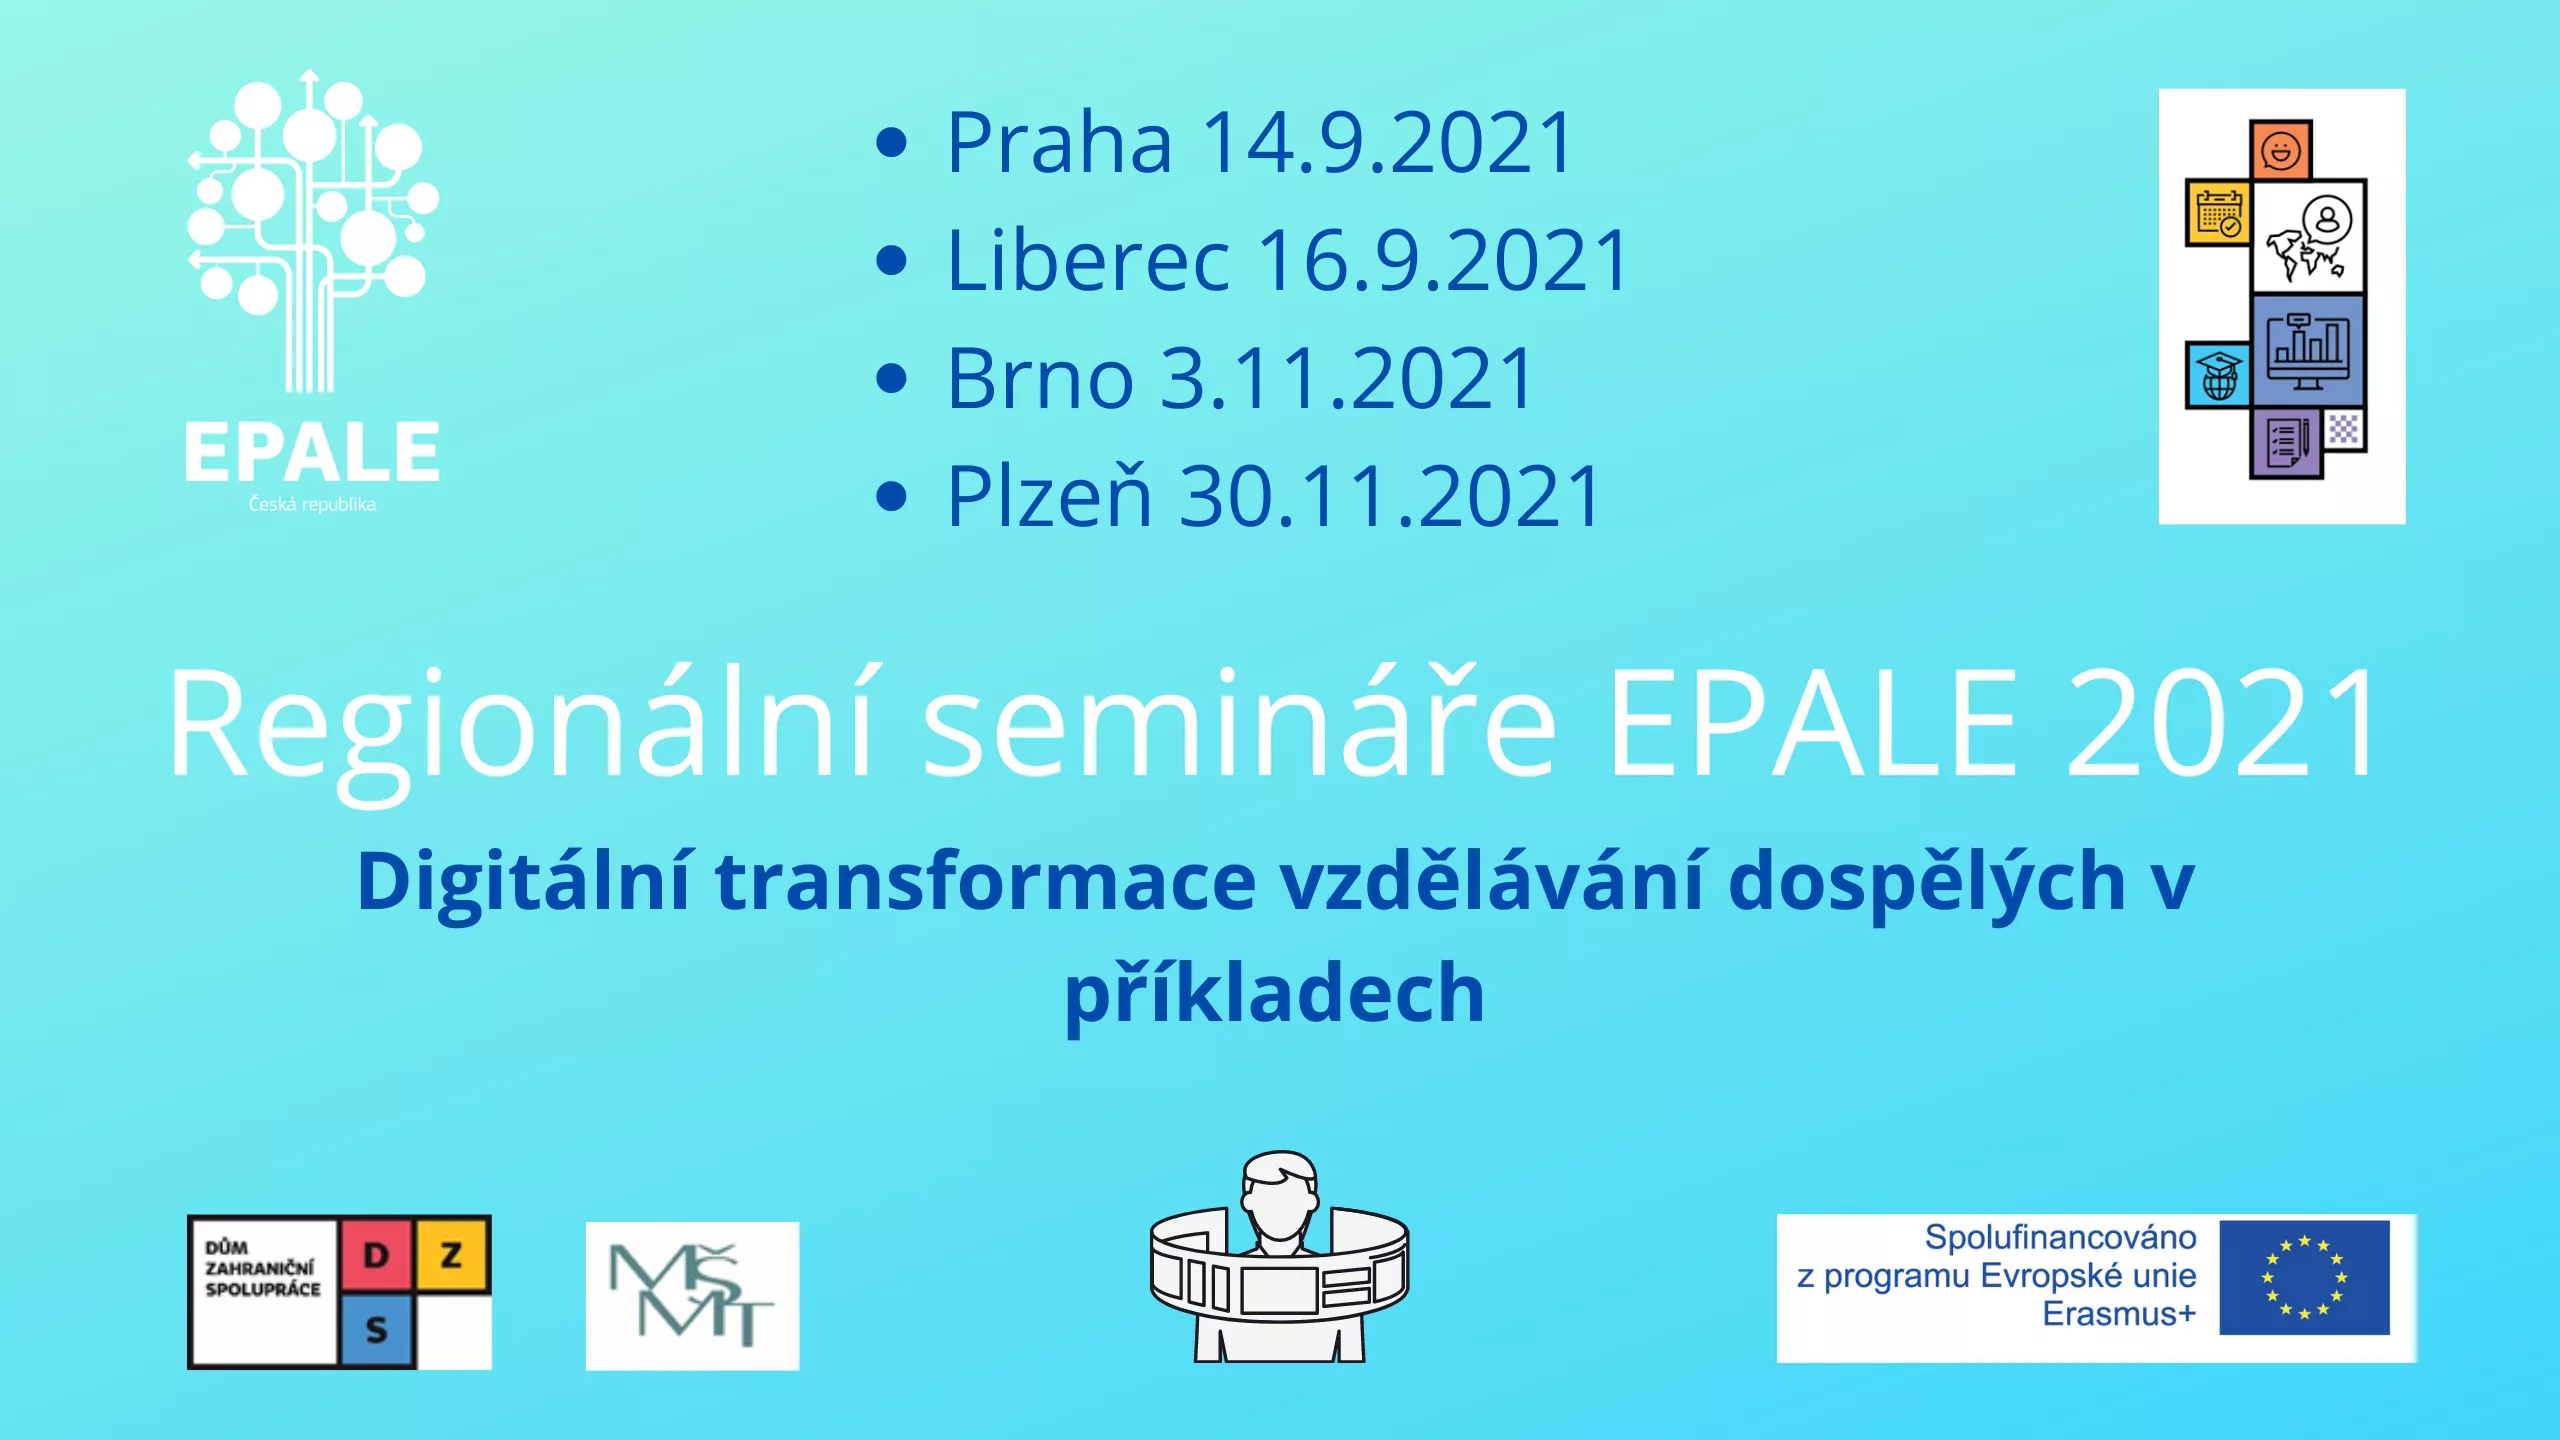 Regionální semináře EPALE 2021.